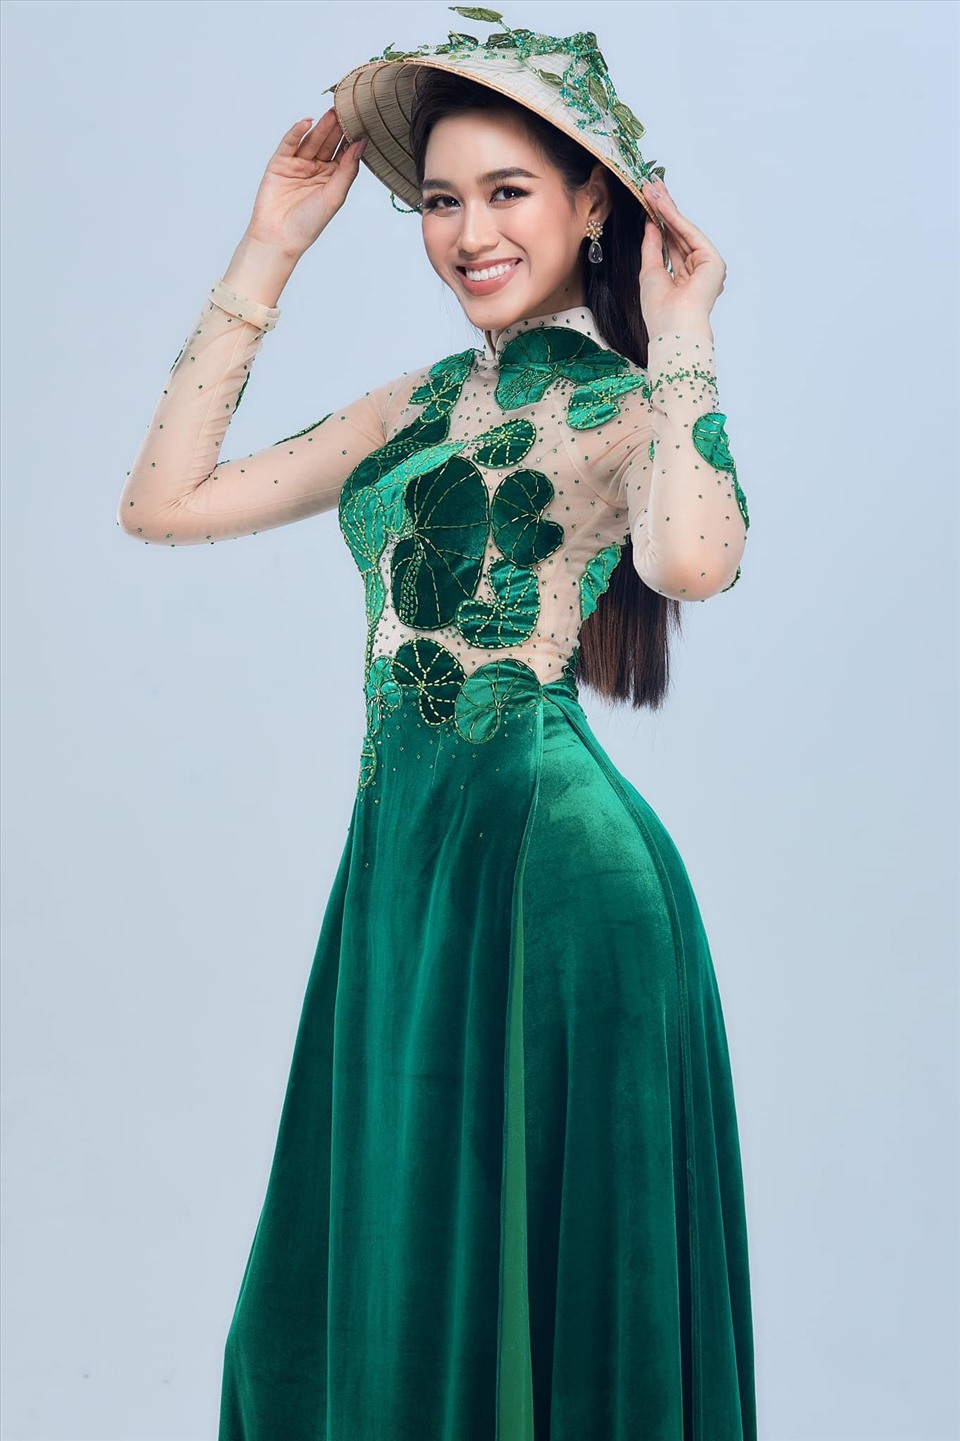 Là đại diện Việt Nam thi đấu tại Miss World năm nay, Đỗ Thị Hà tích cực diện những trang phục giúp quảng bá nét văn hoá truyền thống của quê nhà. Mới đây trong phần thi phỏng vấn kín, người đẹp đã mặc trang phục áo dài với hoạ tiết rau má, lấy cảm hứng từ vùng quê Thanh Hoá của nàng hậu. Ảnh: NVCC.